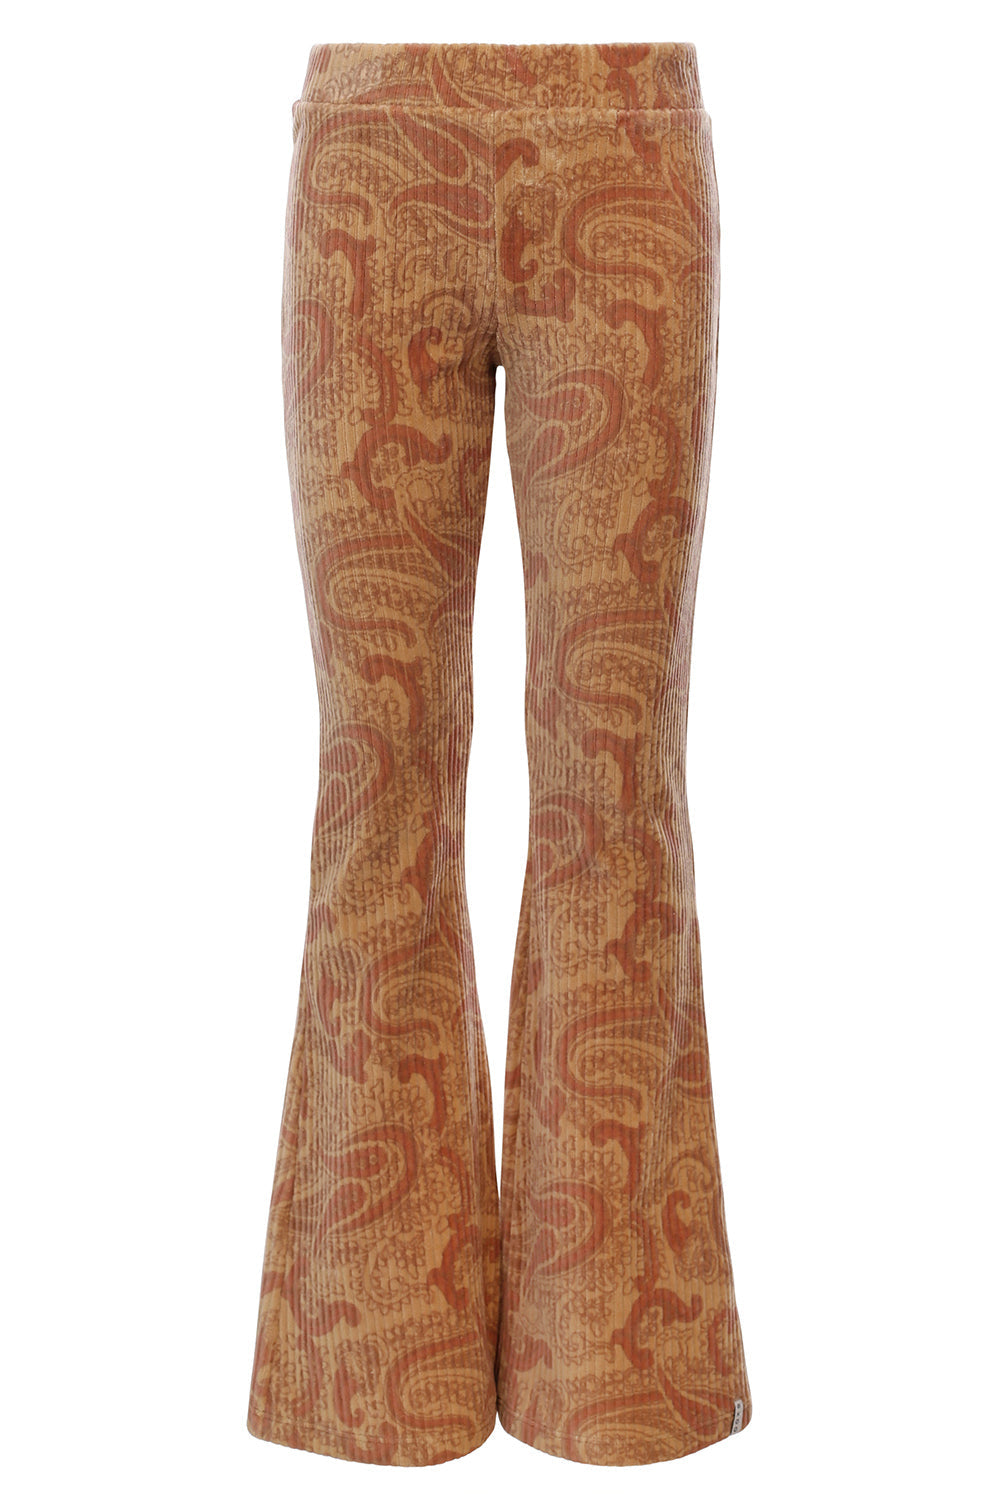 Meisjes Paisley Rib Flare Pants van LOOXS Little in de kleur Vintage paisley in maat 128.